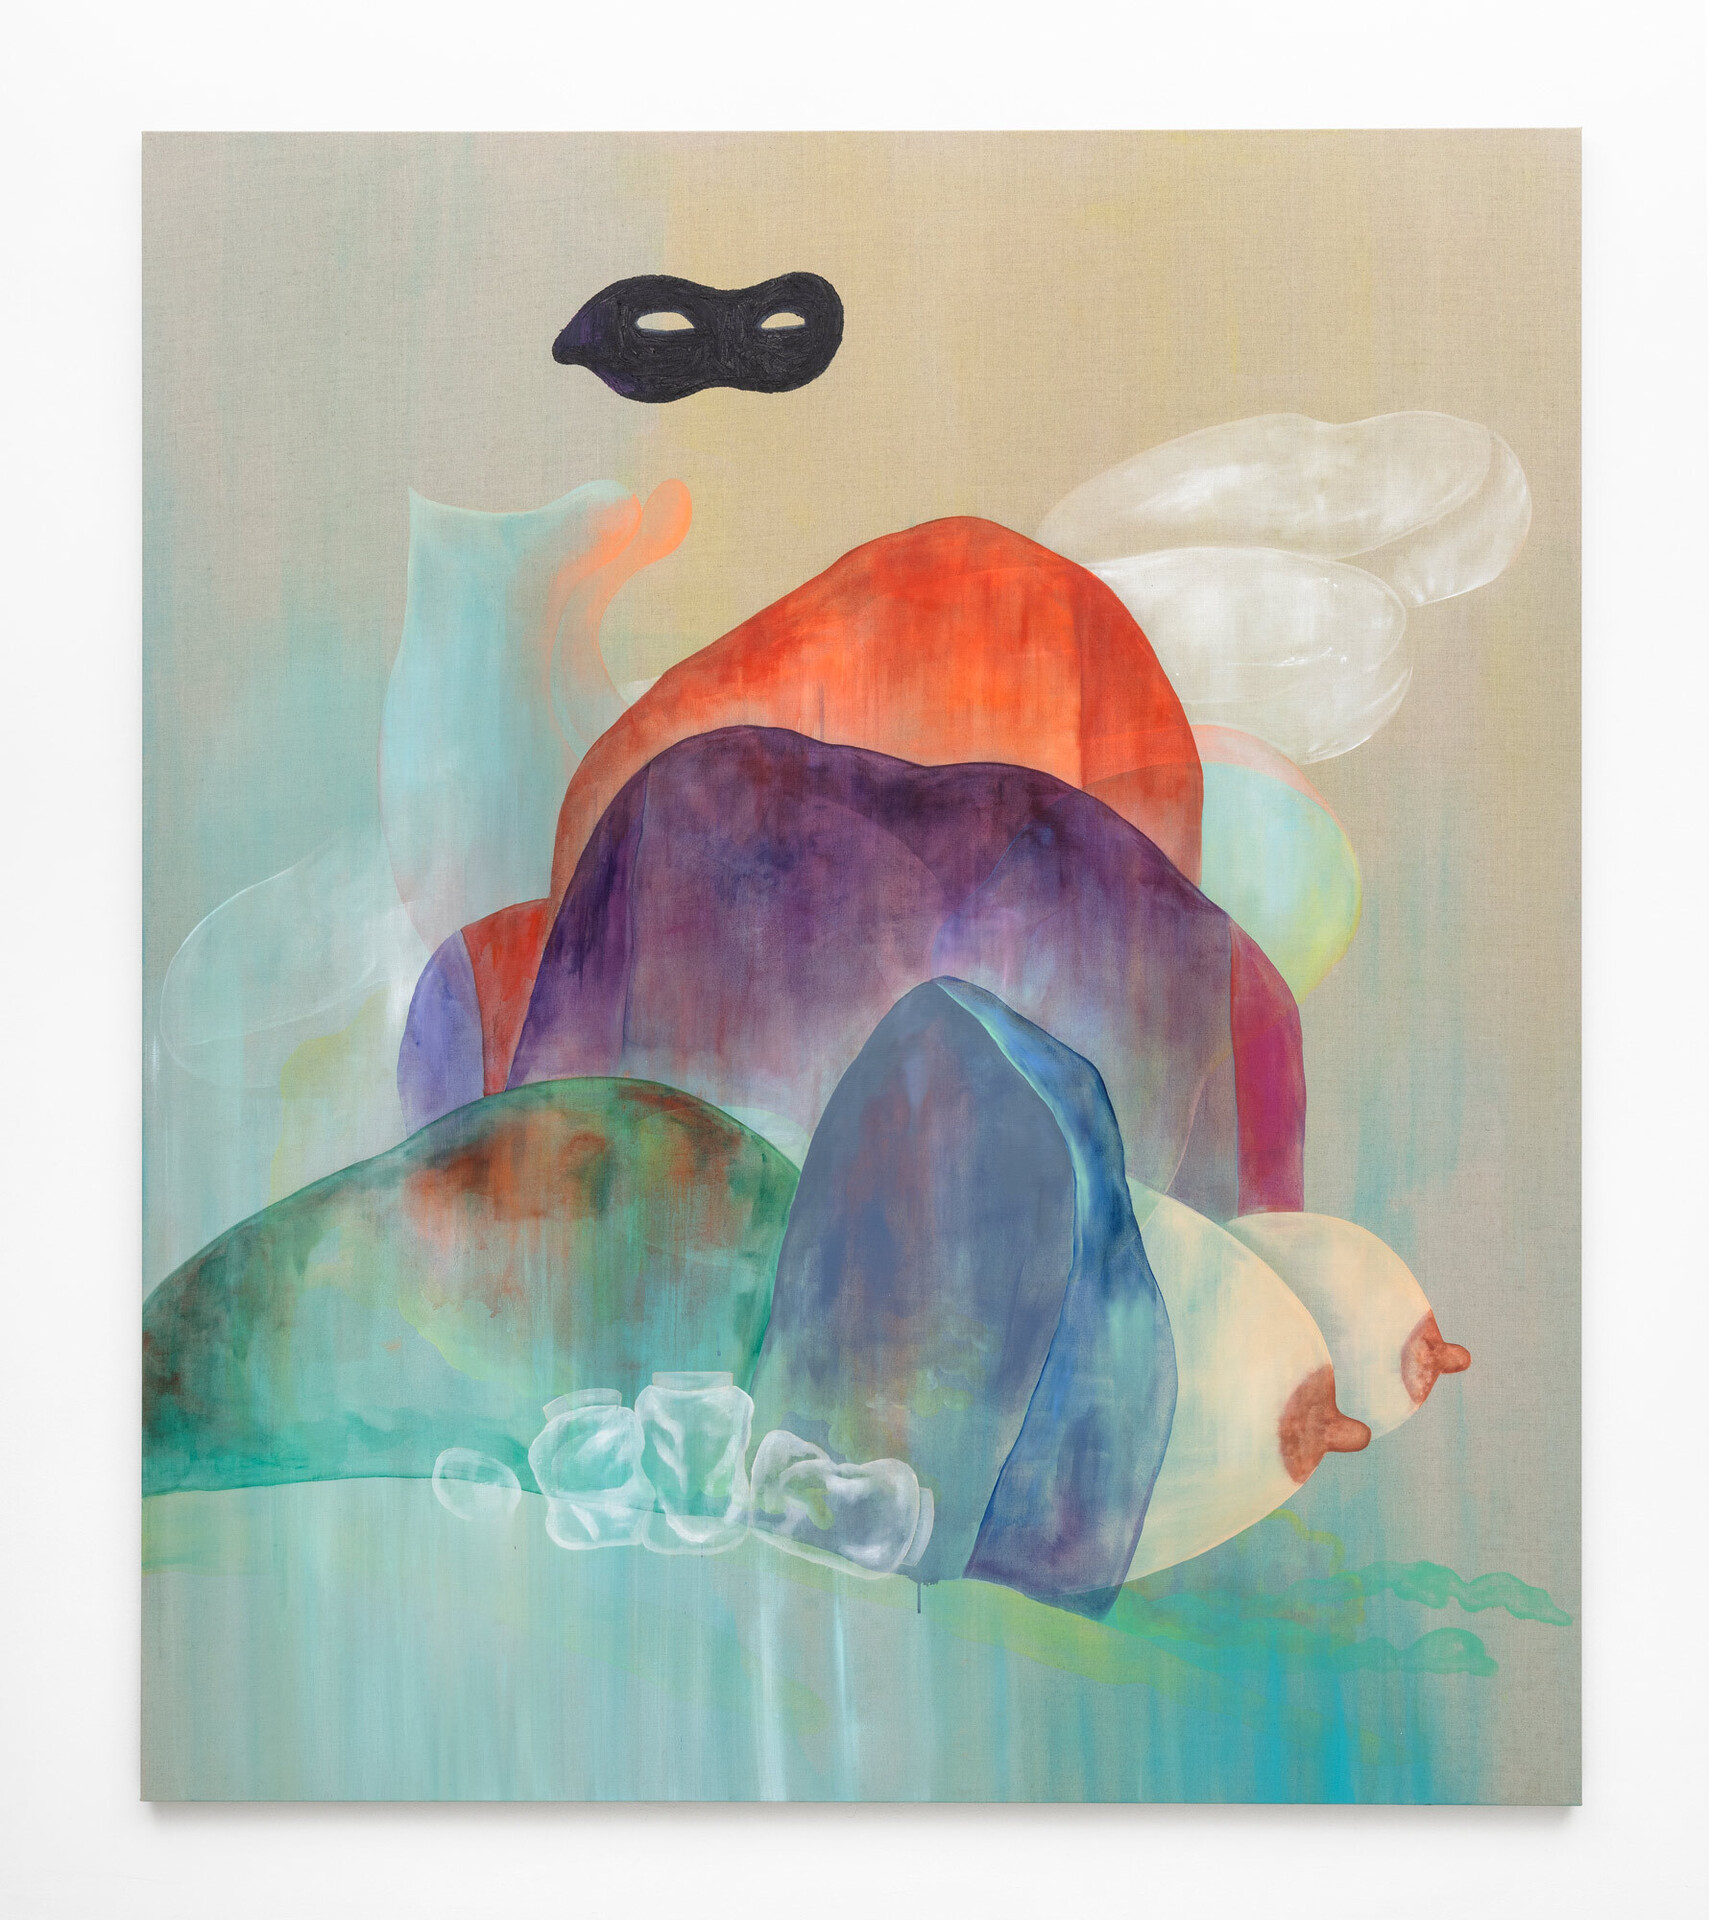 Jagoda Bednarsky, Shadowland (Mask), 2020, oil, gauche and acrylic on canvas, 220 x 190 cm